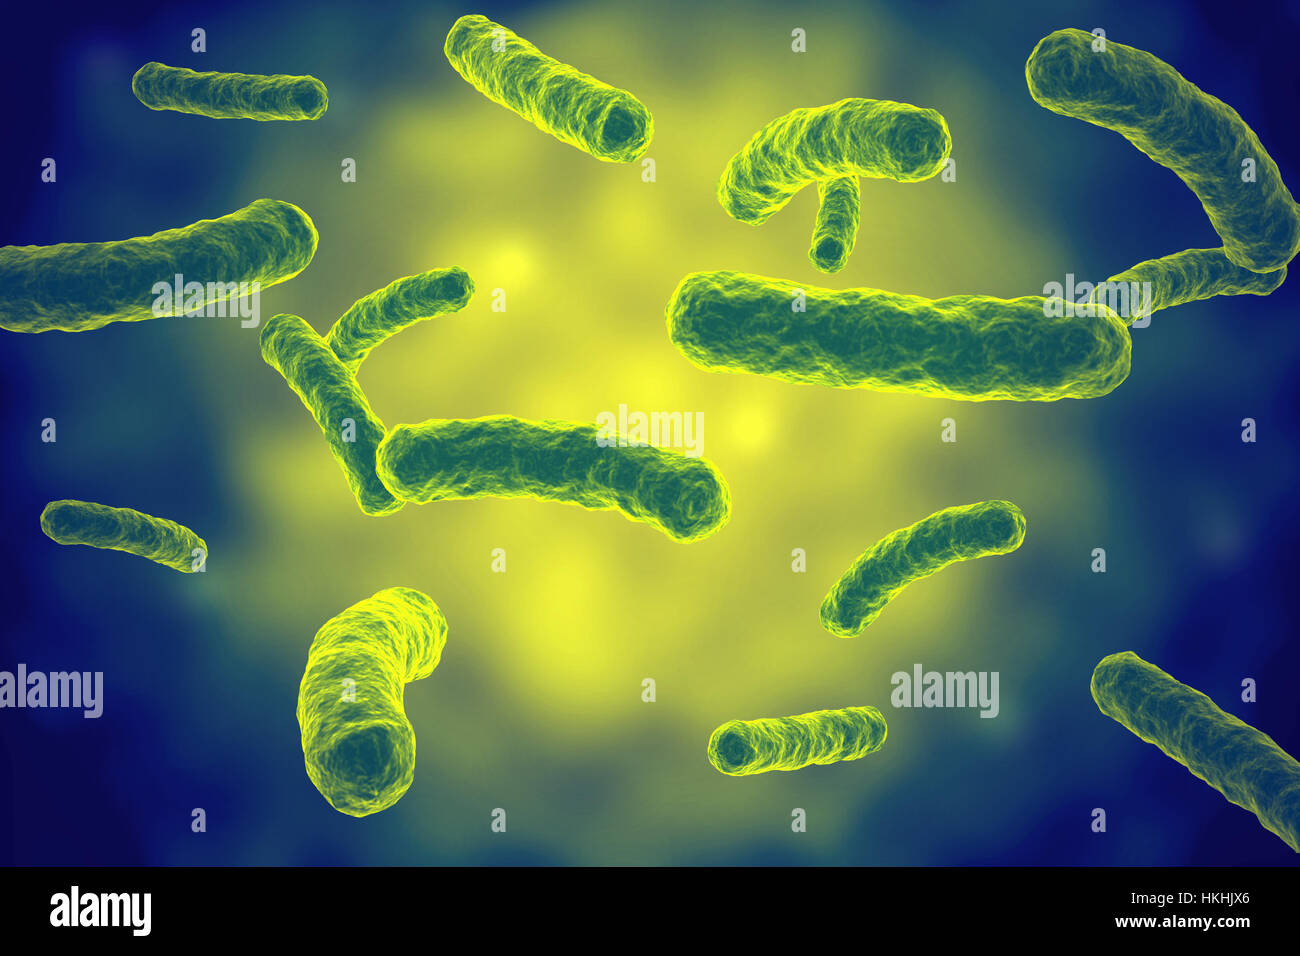 Plusieurs virus ou bactérie verte vue microscopique du liquide dans l'illustration avec une faible profondeur de champ Banque D'Images